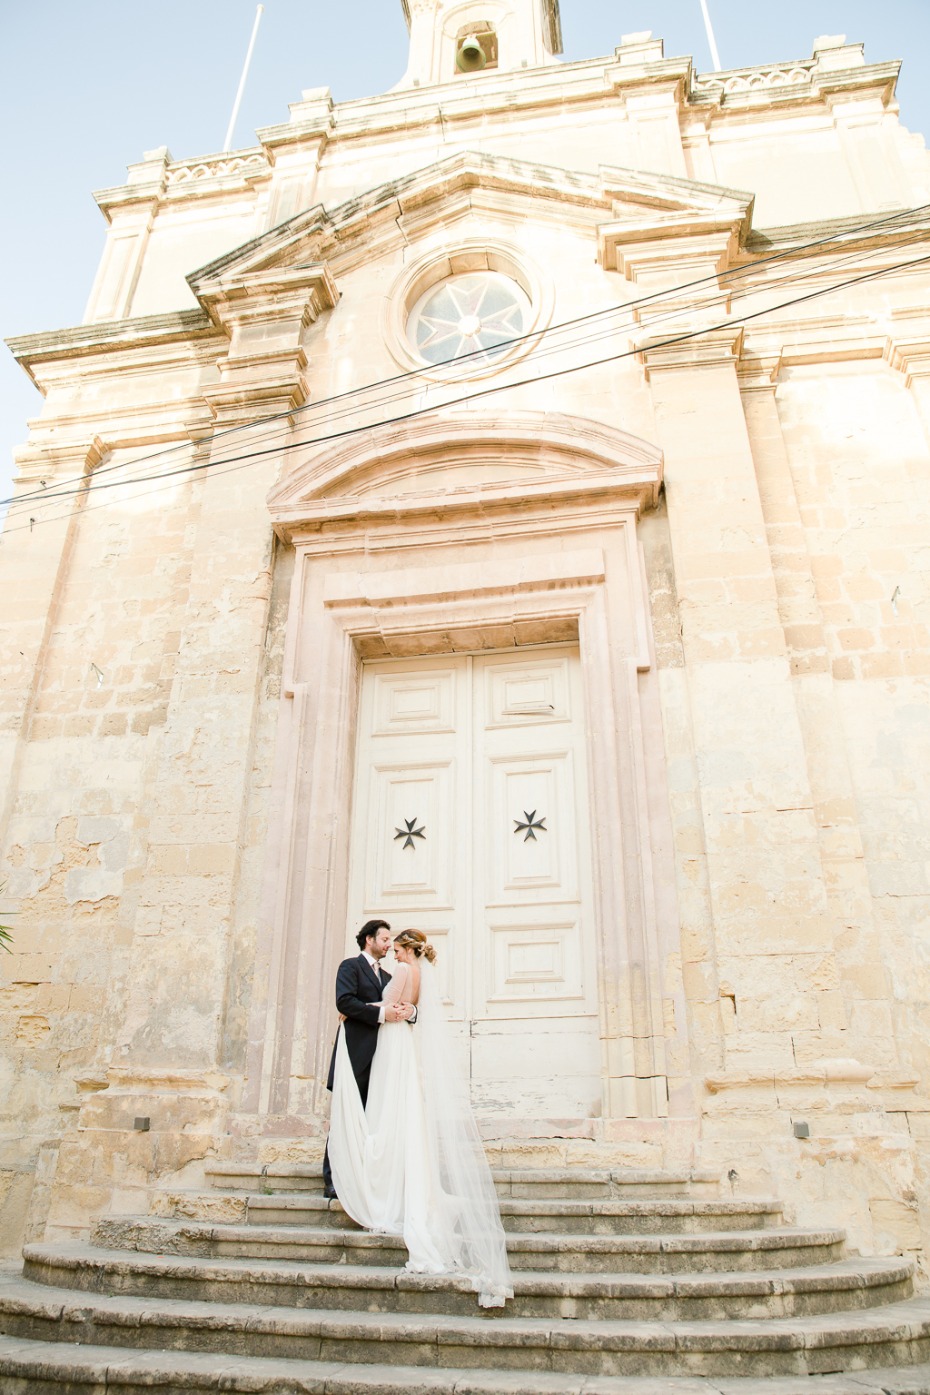 Destination wedding in Malta